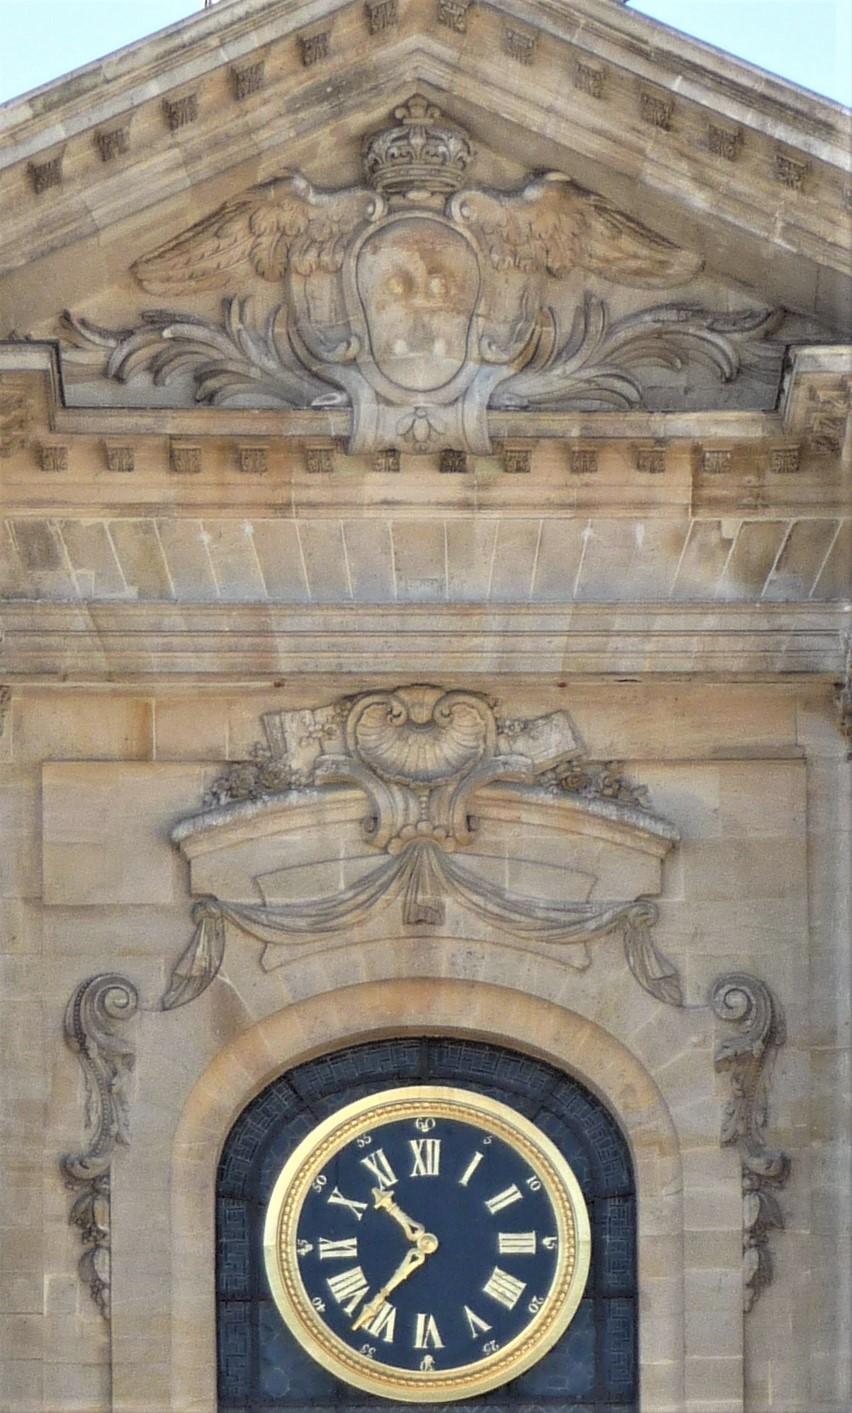 Nicolas Pineau, ornements du frontispice de la cathédrale Saint-Louis de Versailles, 1743-1754, cl. Ph. Cachau